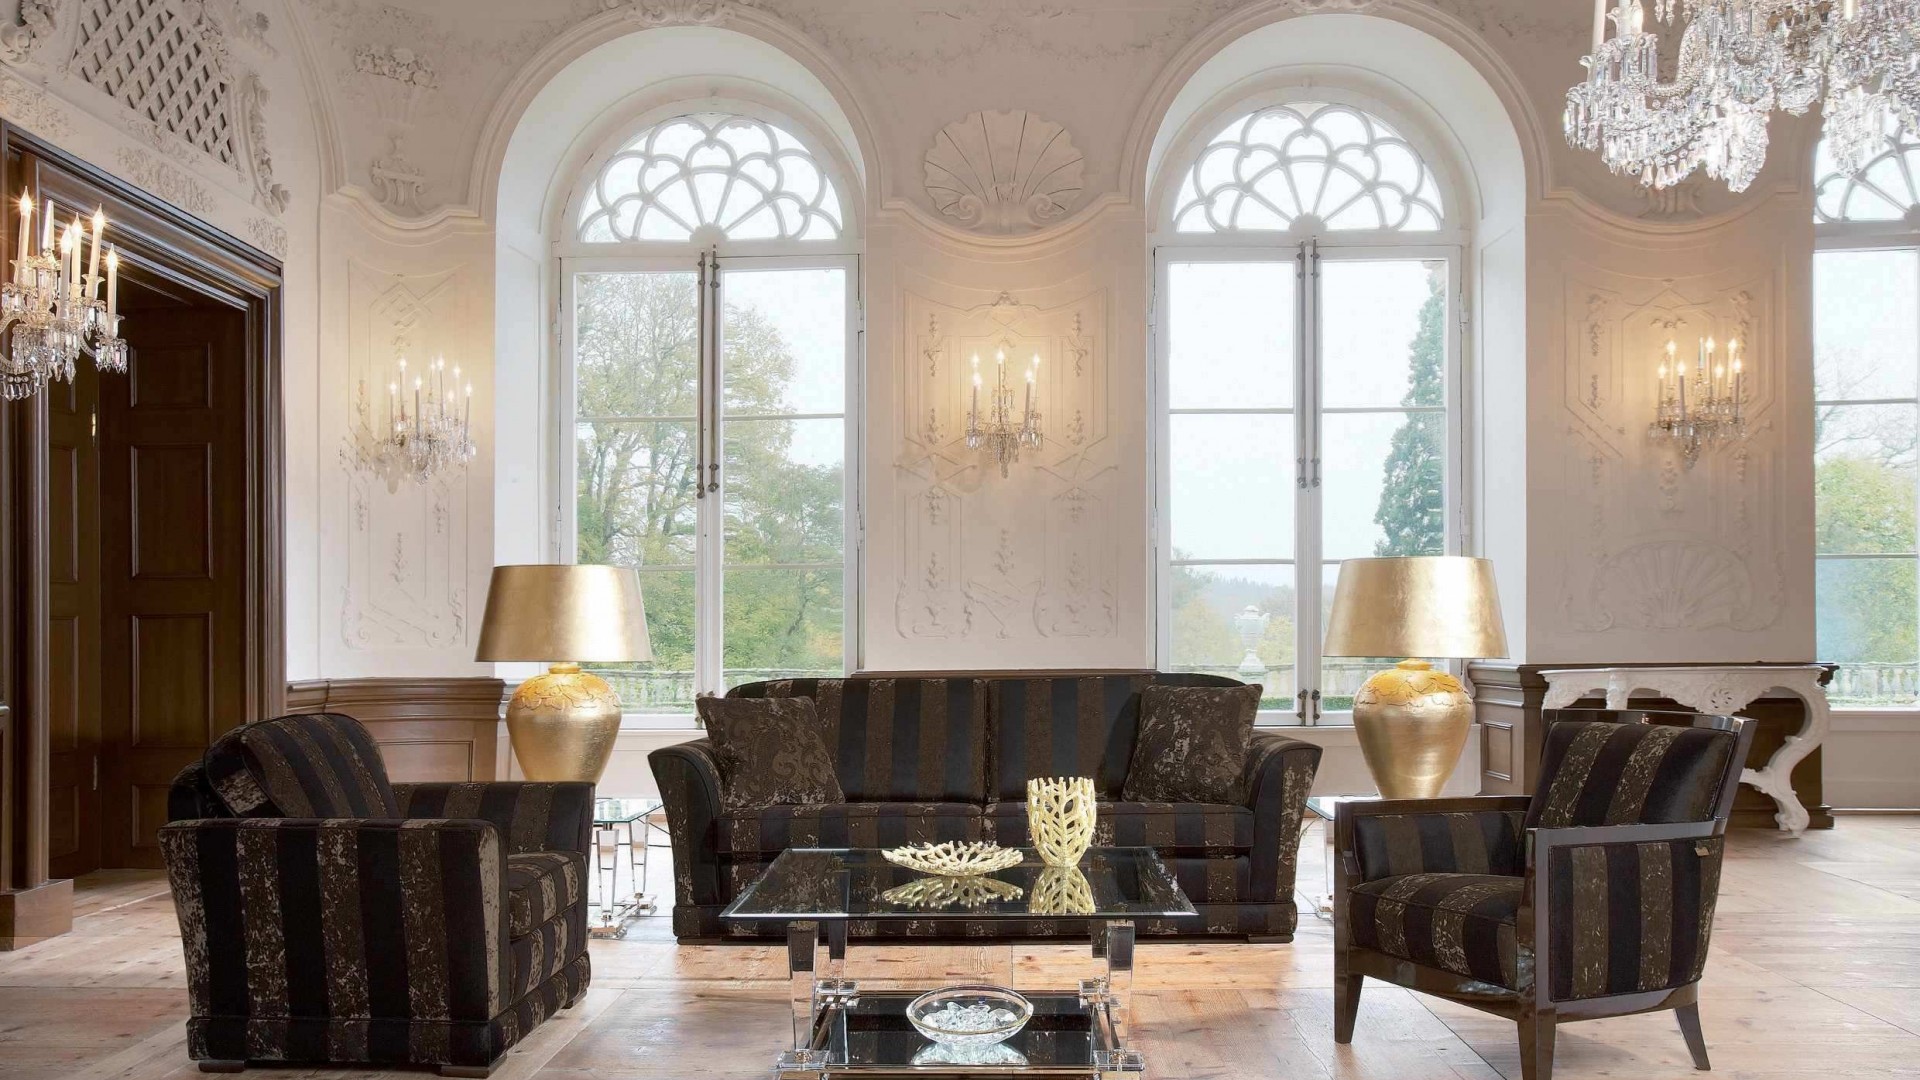 Фото бесплатно кресла, гостиная, люстры, француские окна, интерьер